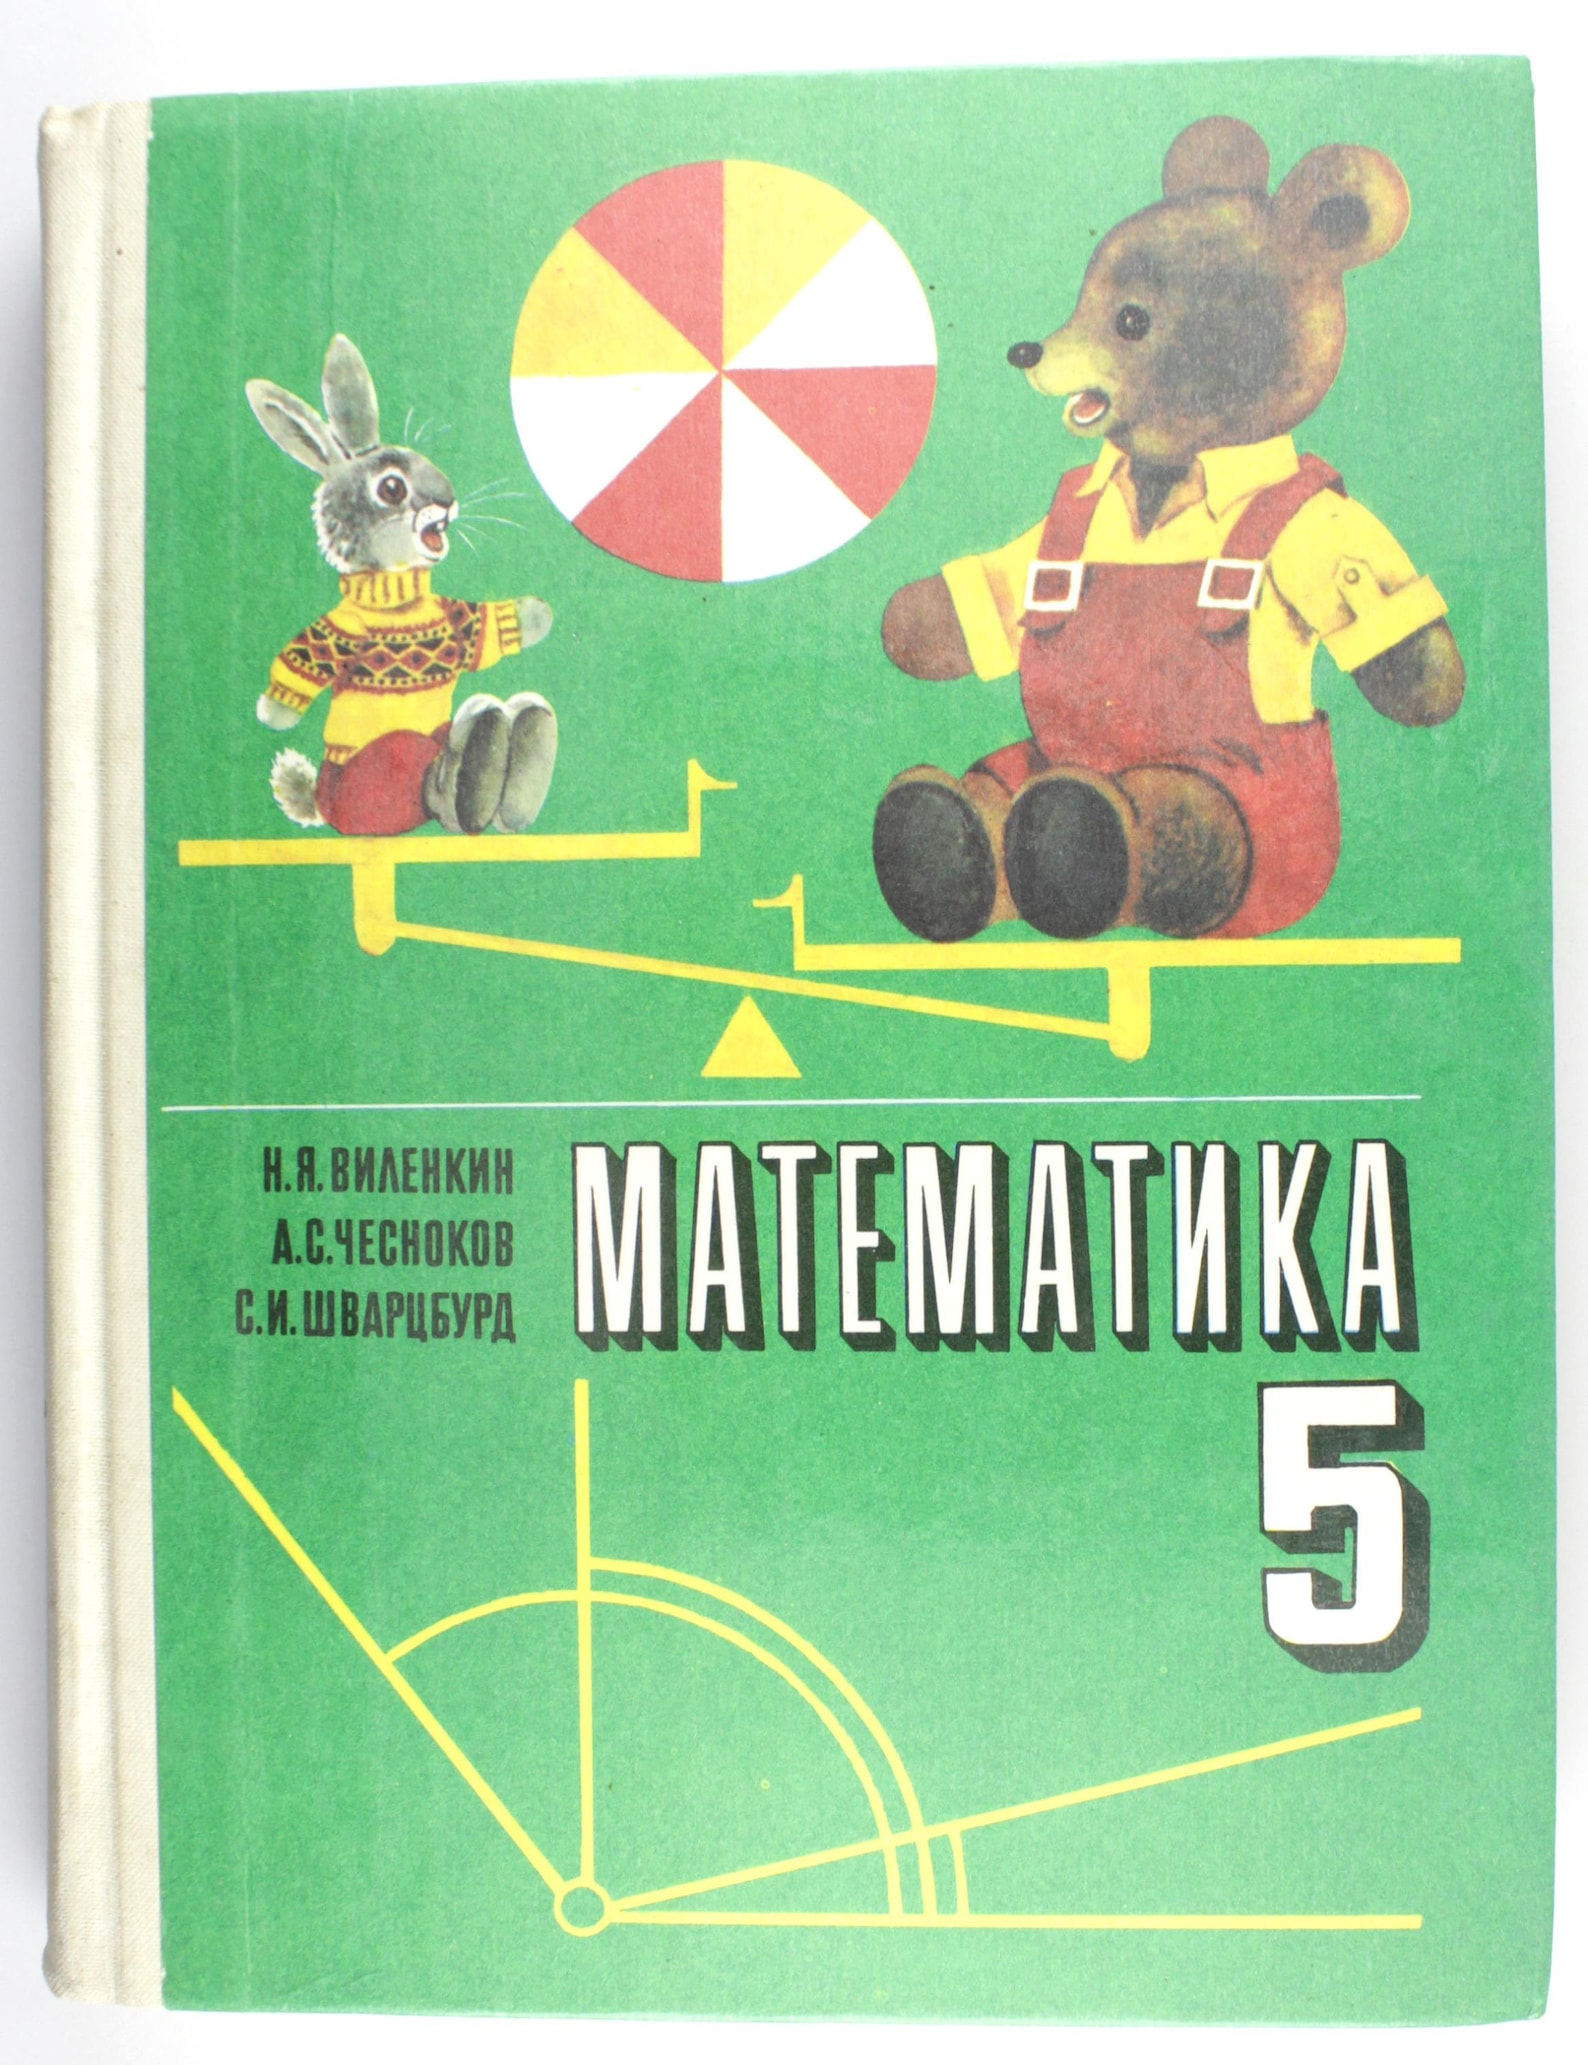 Учебник математики. Учебник по математике 5 класс. Учебник математики СССР. Учебник математики 5.